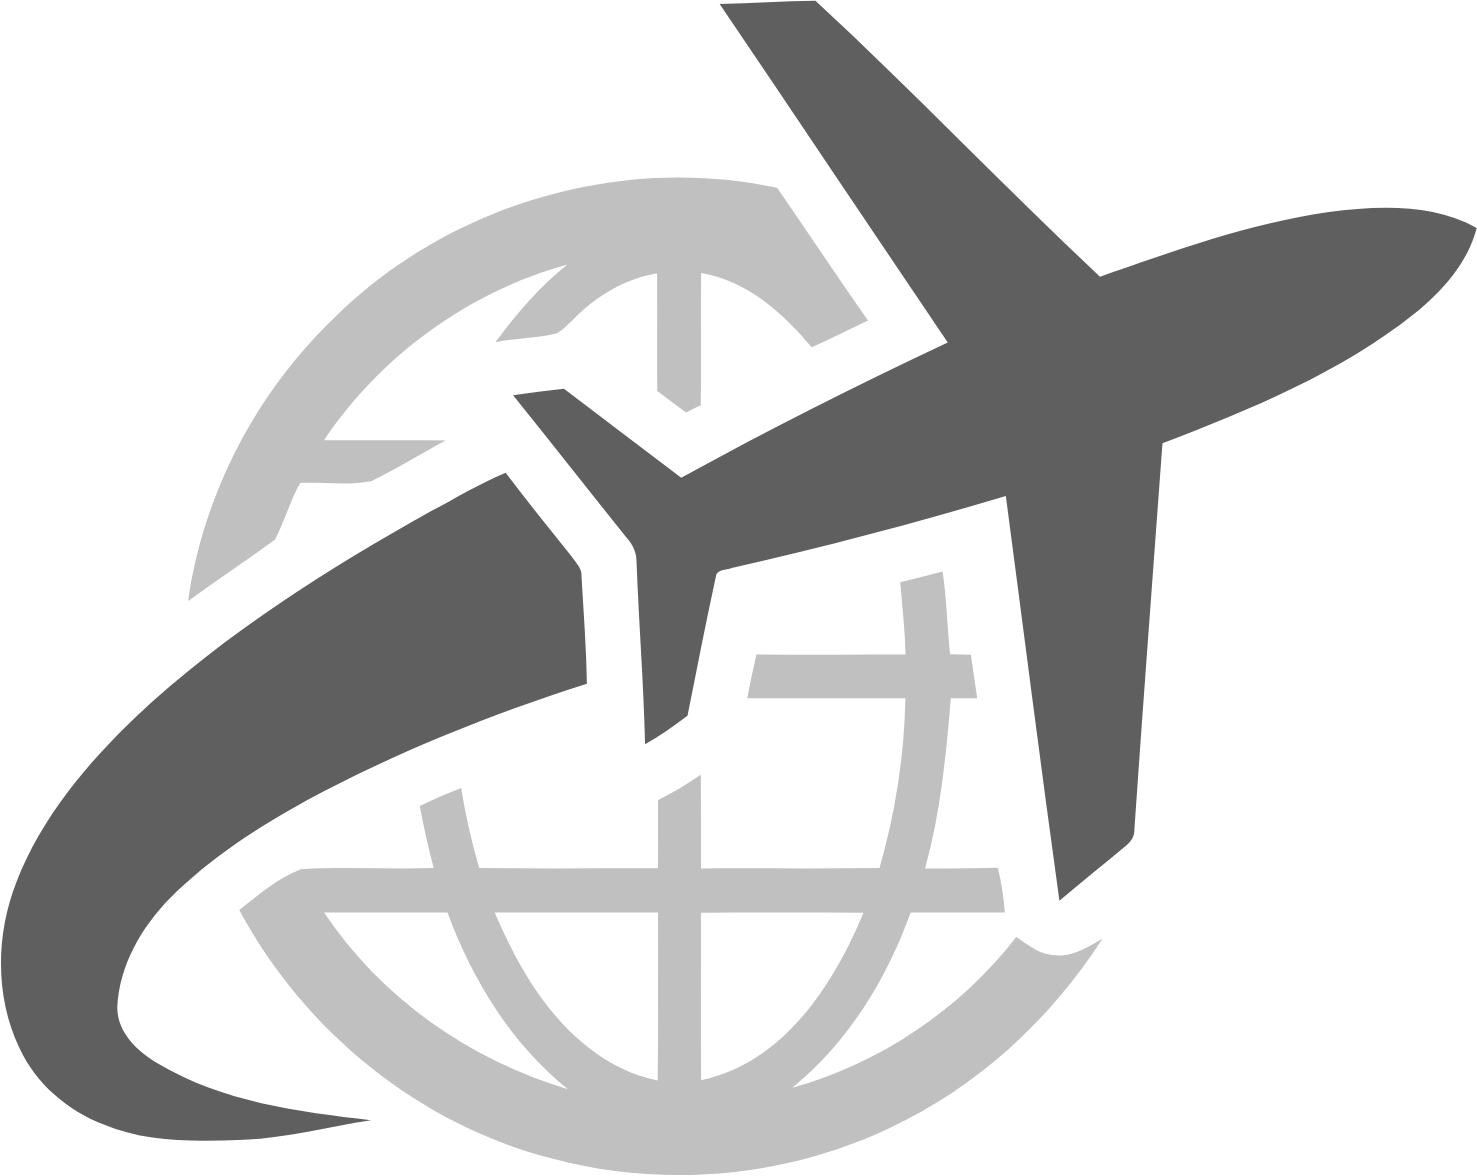 US Global Jets ETF logo (transparent PNG)